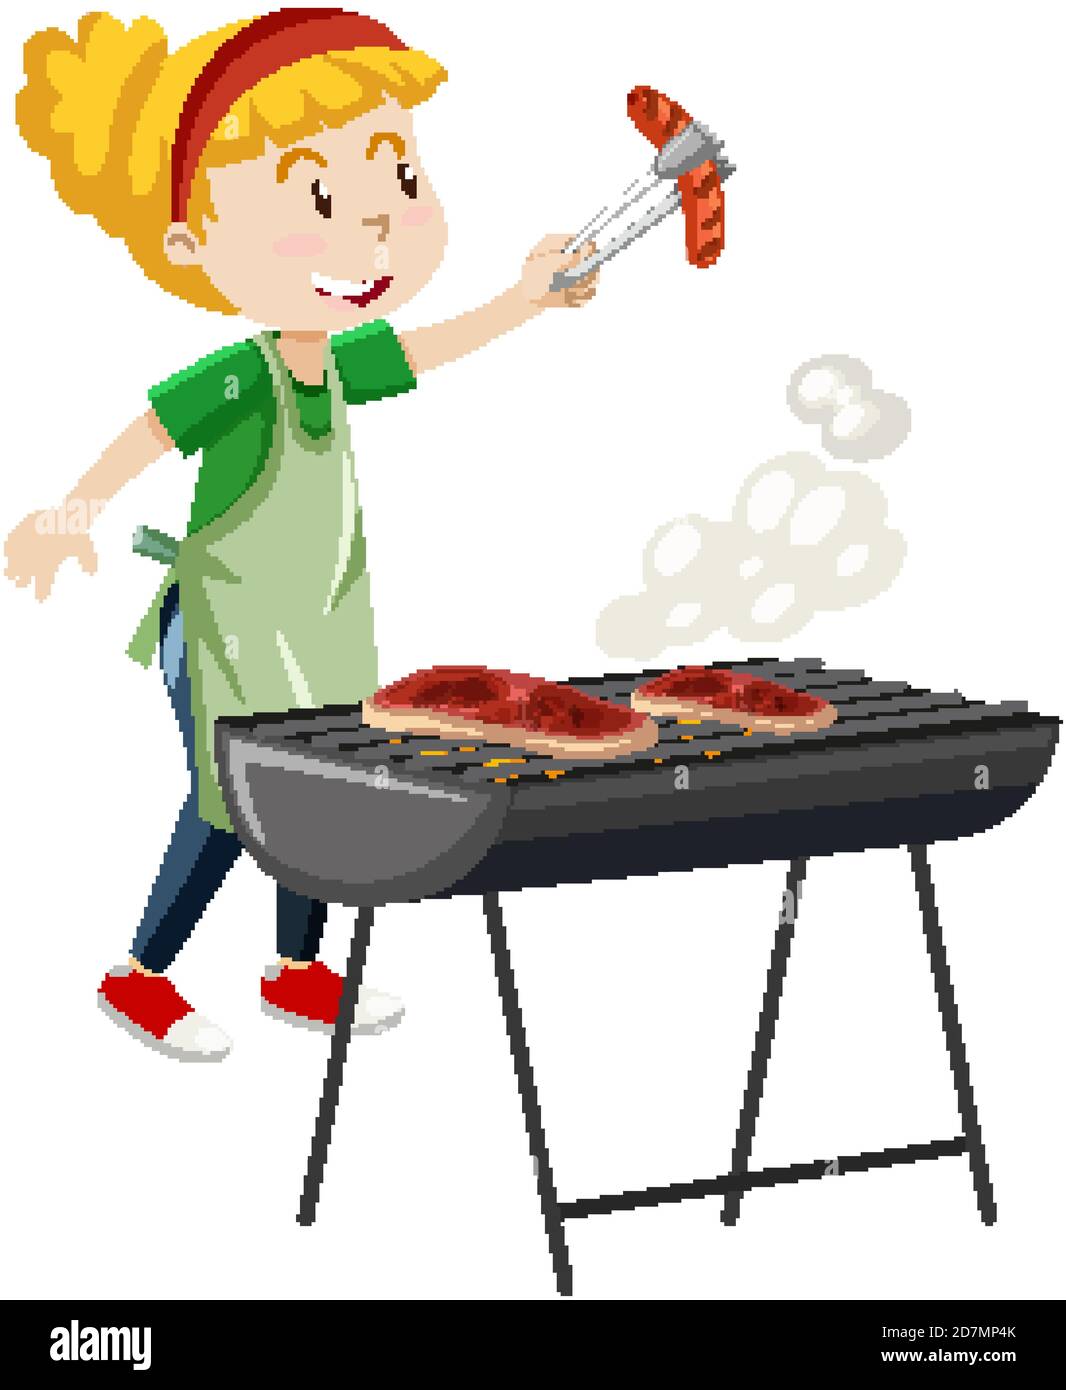 Mädchen Kochen Grill Steak Cartoon-Stil auf weißem Hintergrund isoliert  Abbildung Stock-Vektorgrafik - Alamy